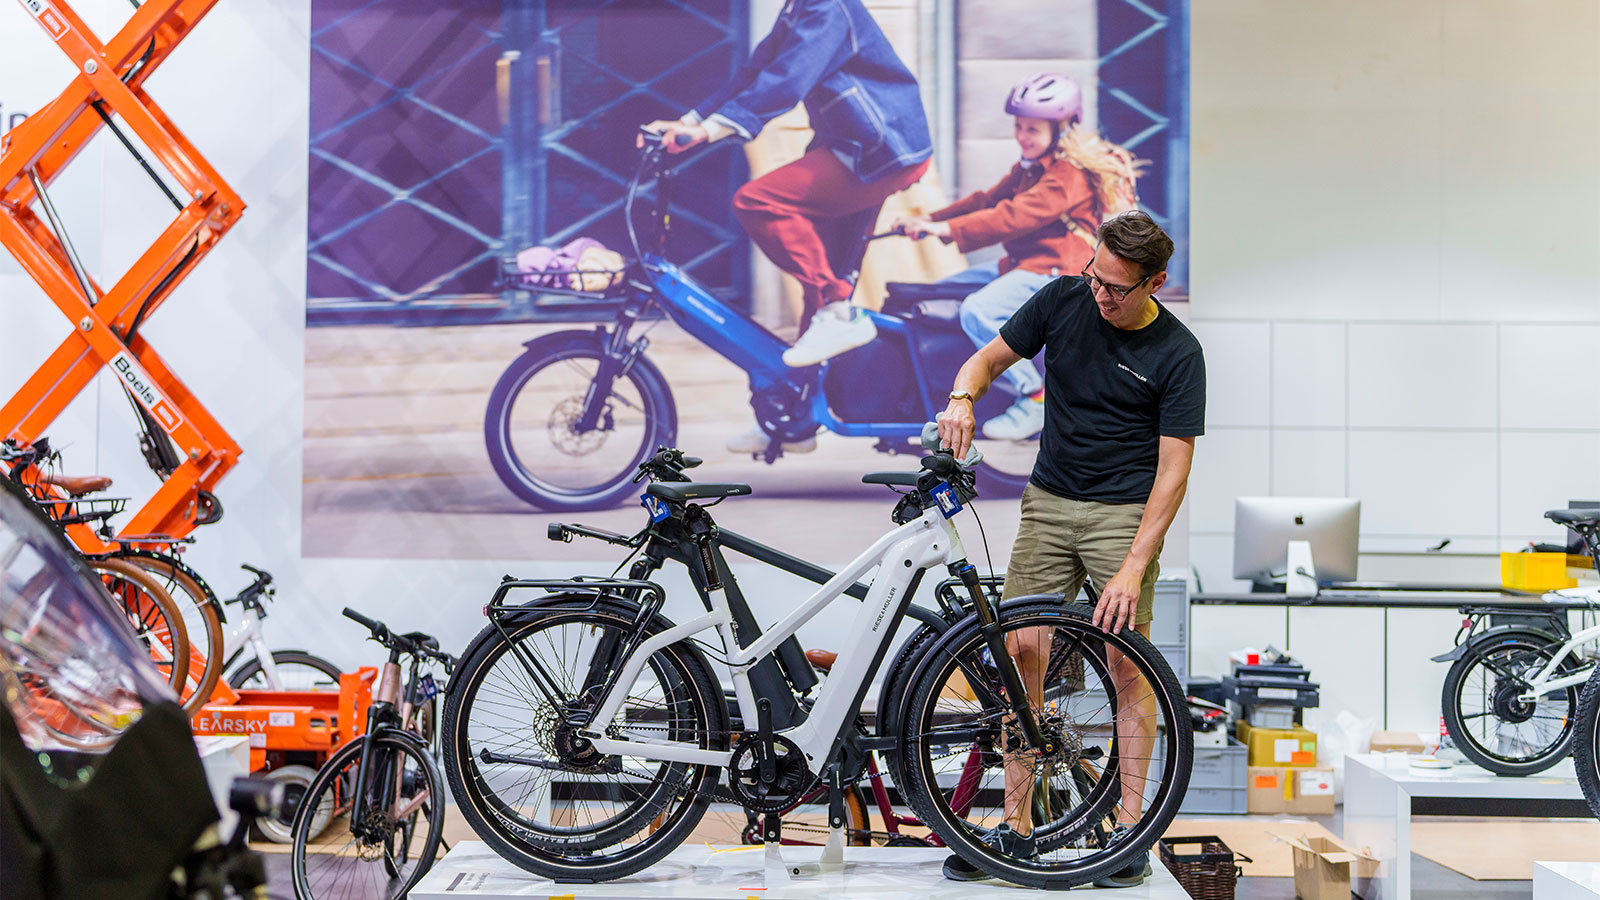 Một người đàn ông mặc áo phông đen đứng đằng sau chiếc xe đạp điện màu trắng trên bệ trước màn hình hiển thị một chiếc xe đạp chở hàng